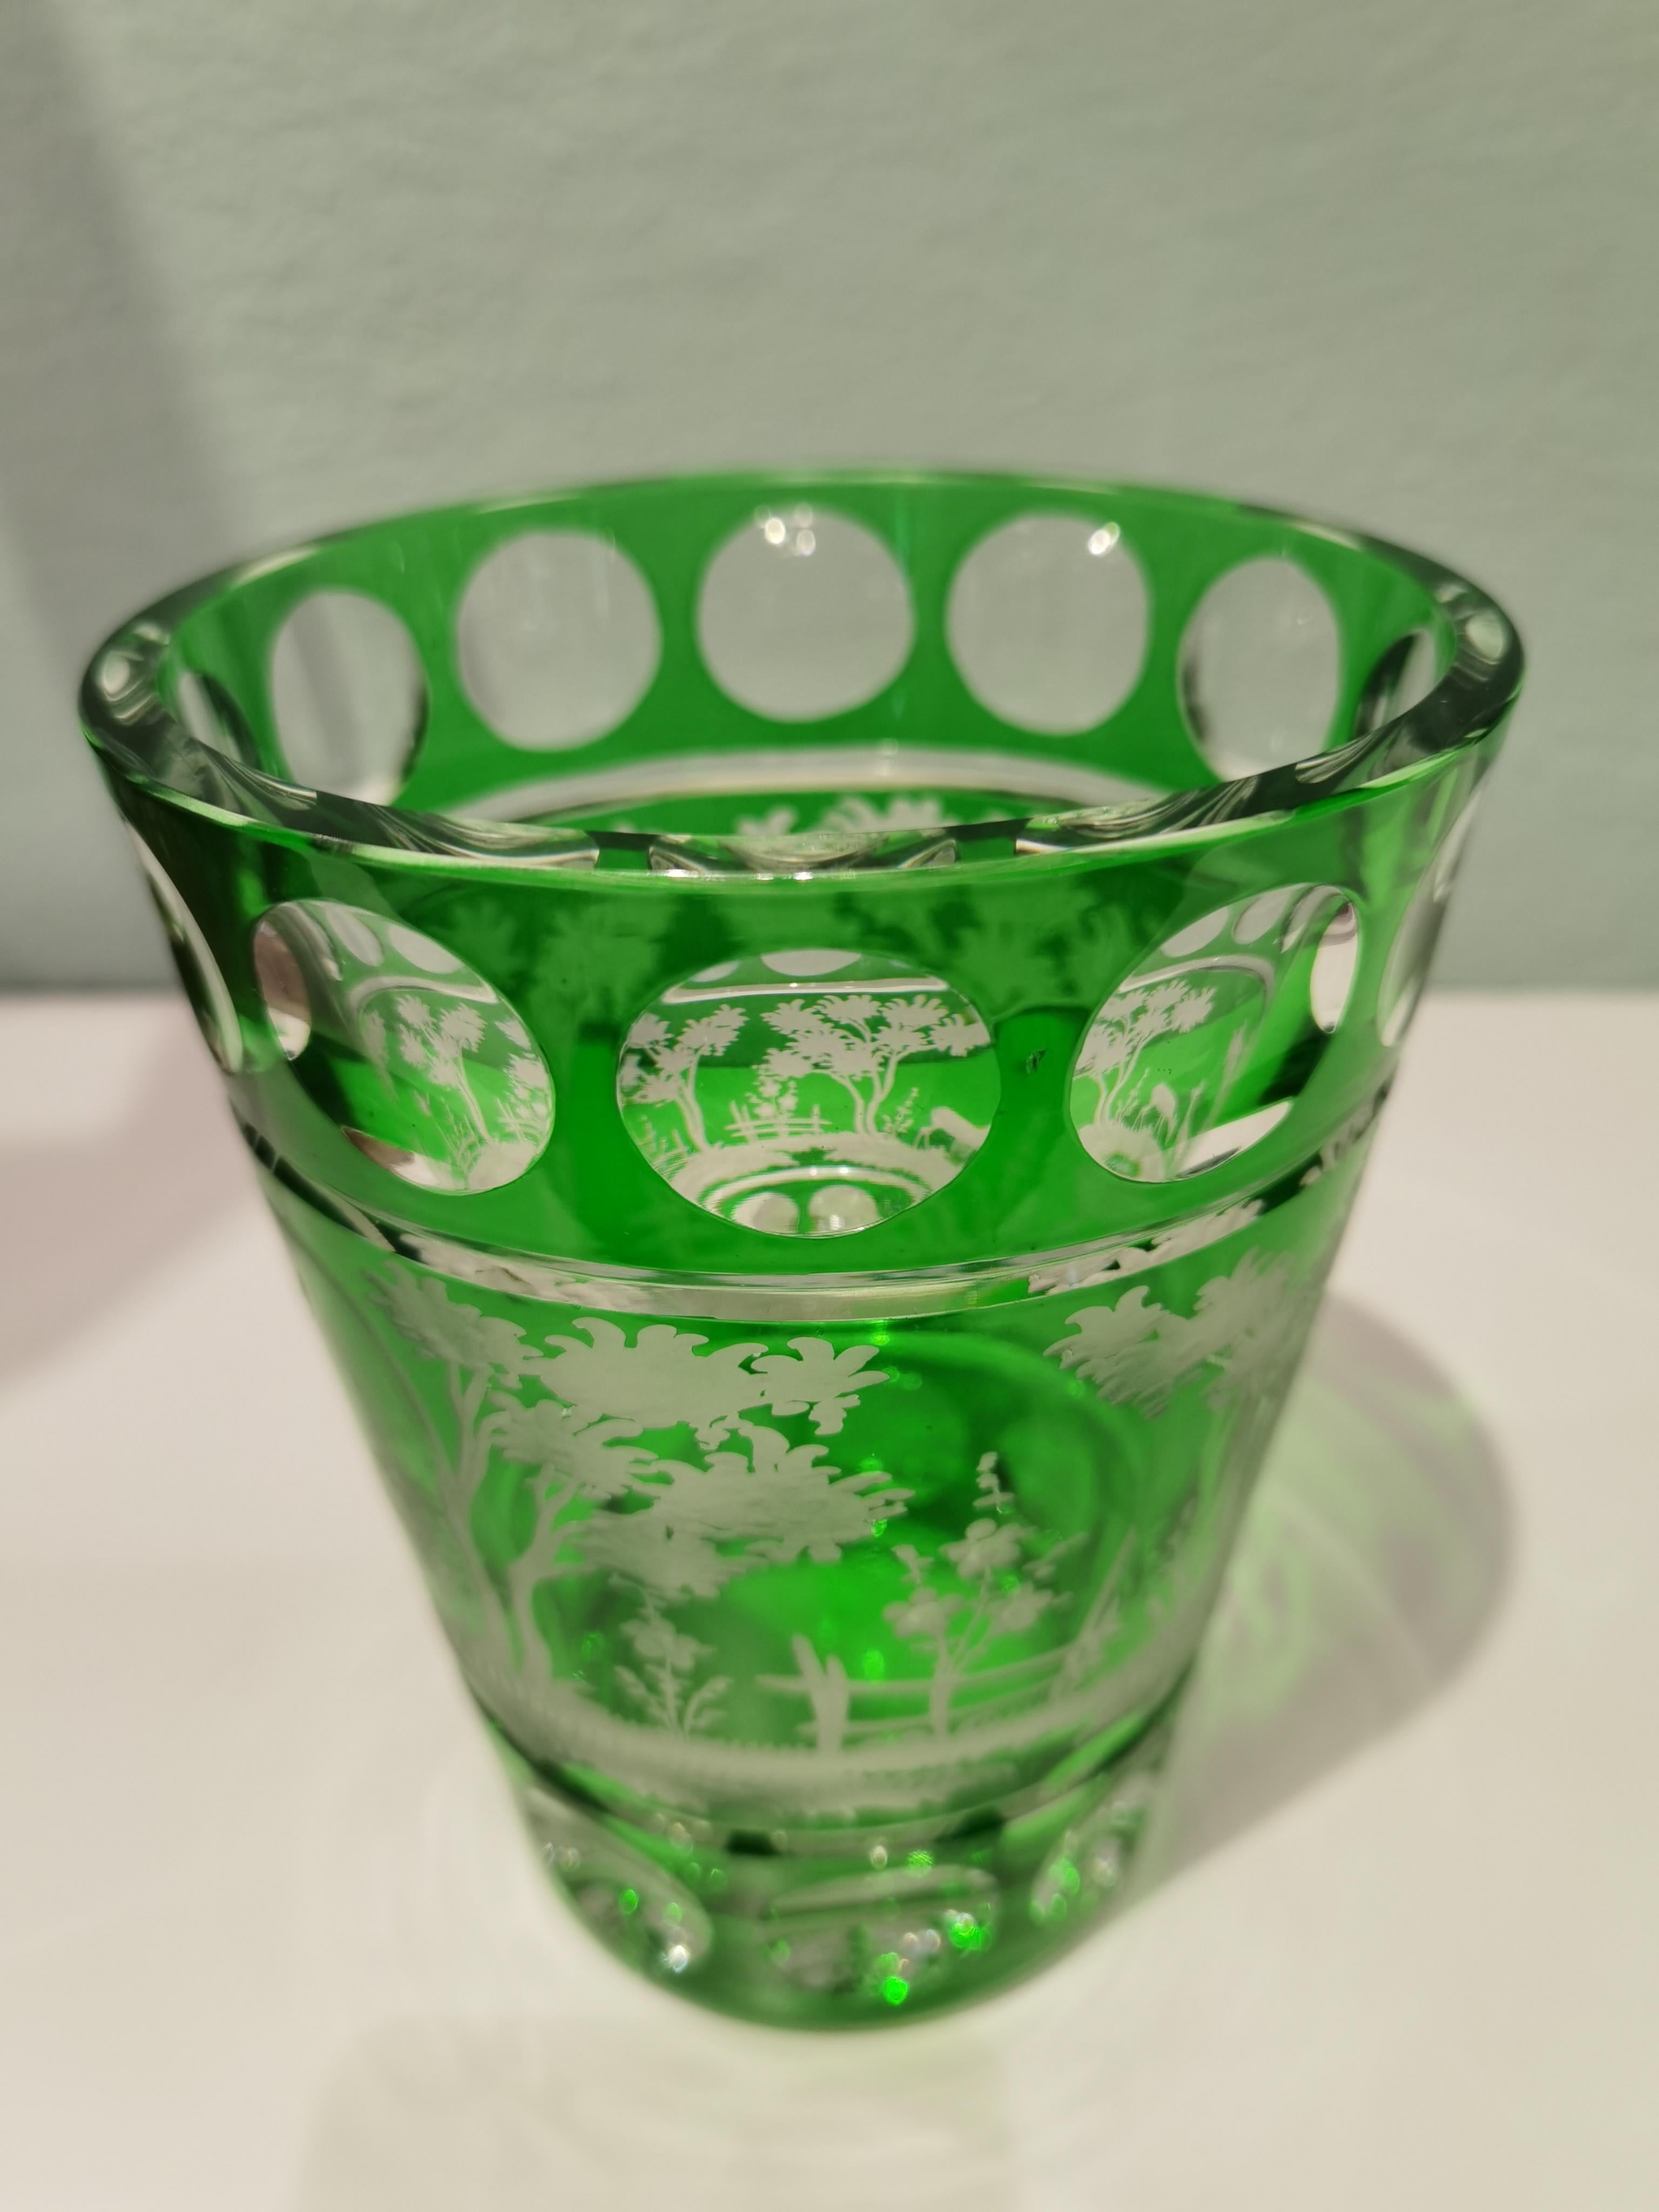 Handgeblasene Vase aus östlichem Kristall in grünem Glas mit Landhausdekor rundherum. Die Blätter, der obere Hase und die Hirsche sind von Glaskünstlern in Bayern/Deutschland von Hand graviert. Das hier gezeigte Glas ist in einer grünen Farbe